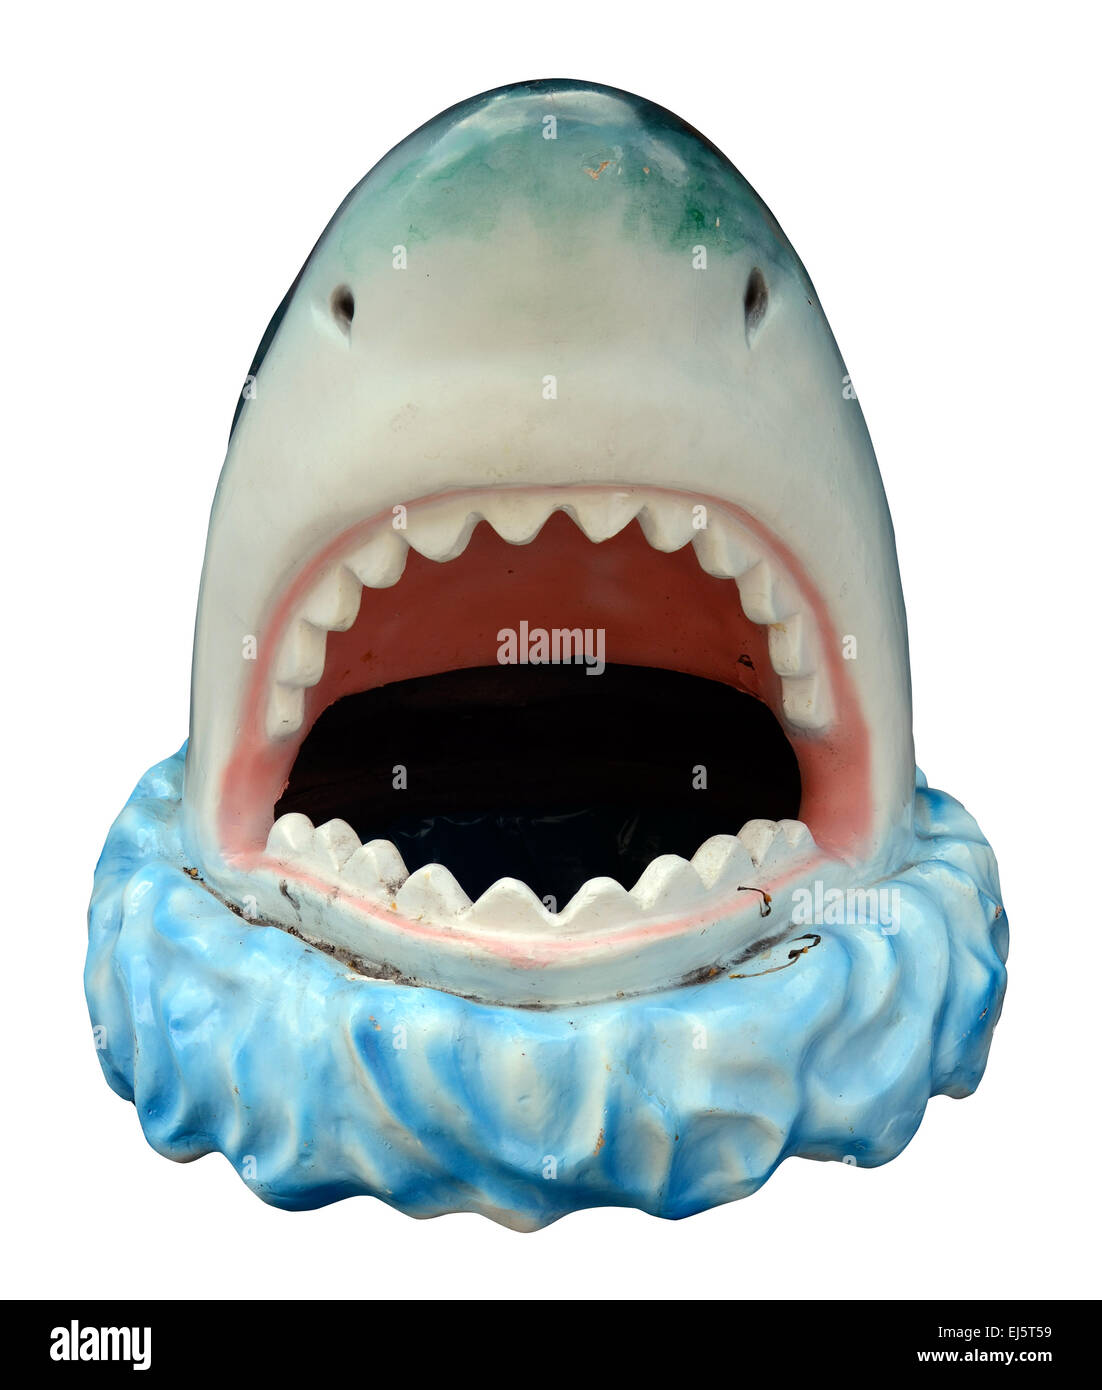 Isolation Of A Grungy Novelty Plastic Shark's Head Stock Photo